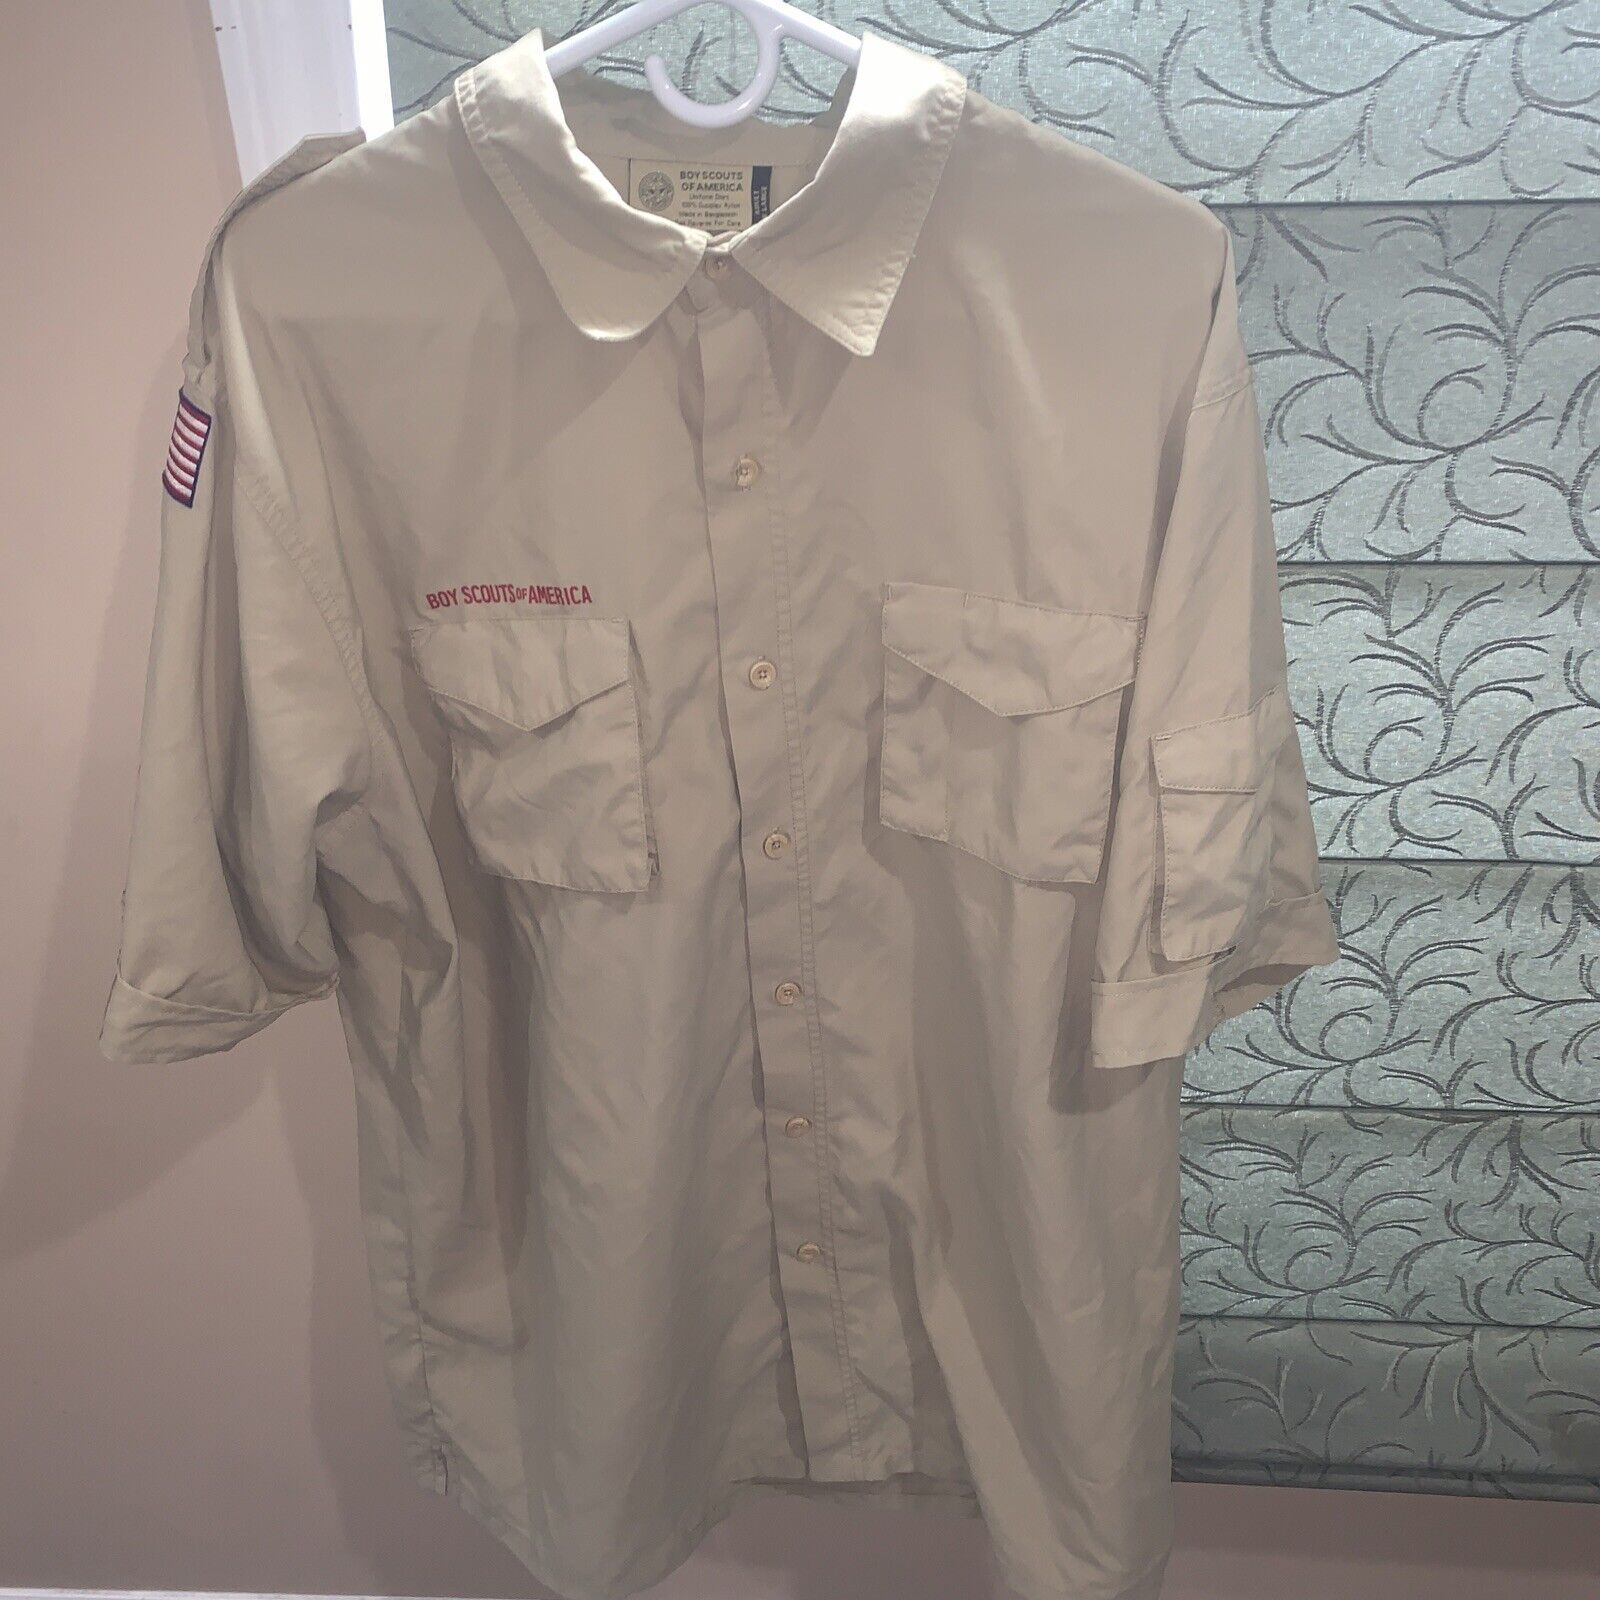 Boy Scout BSA UNIFORM New Style SHIRT Adult Mens Extra Large XL Short Sleeve J18